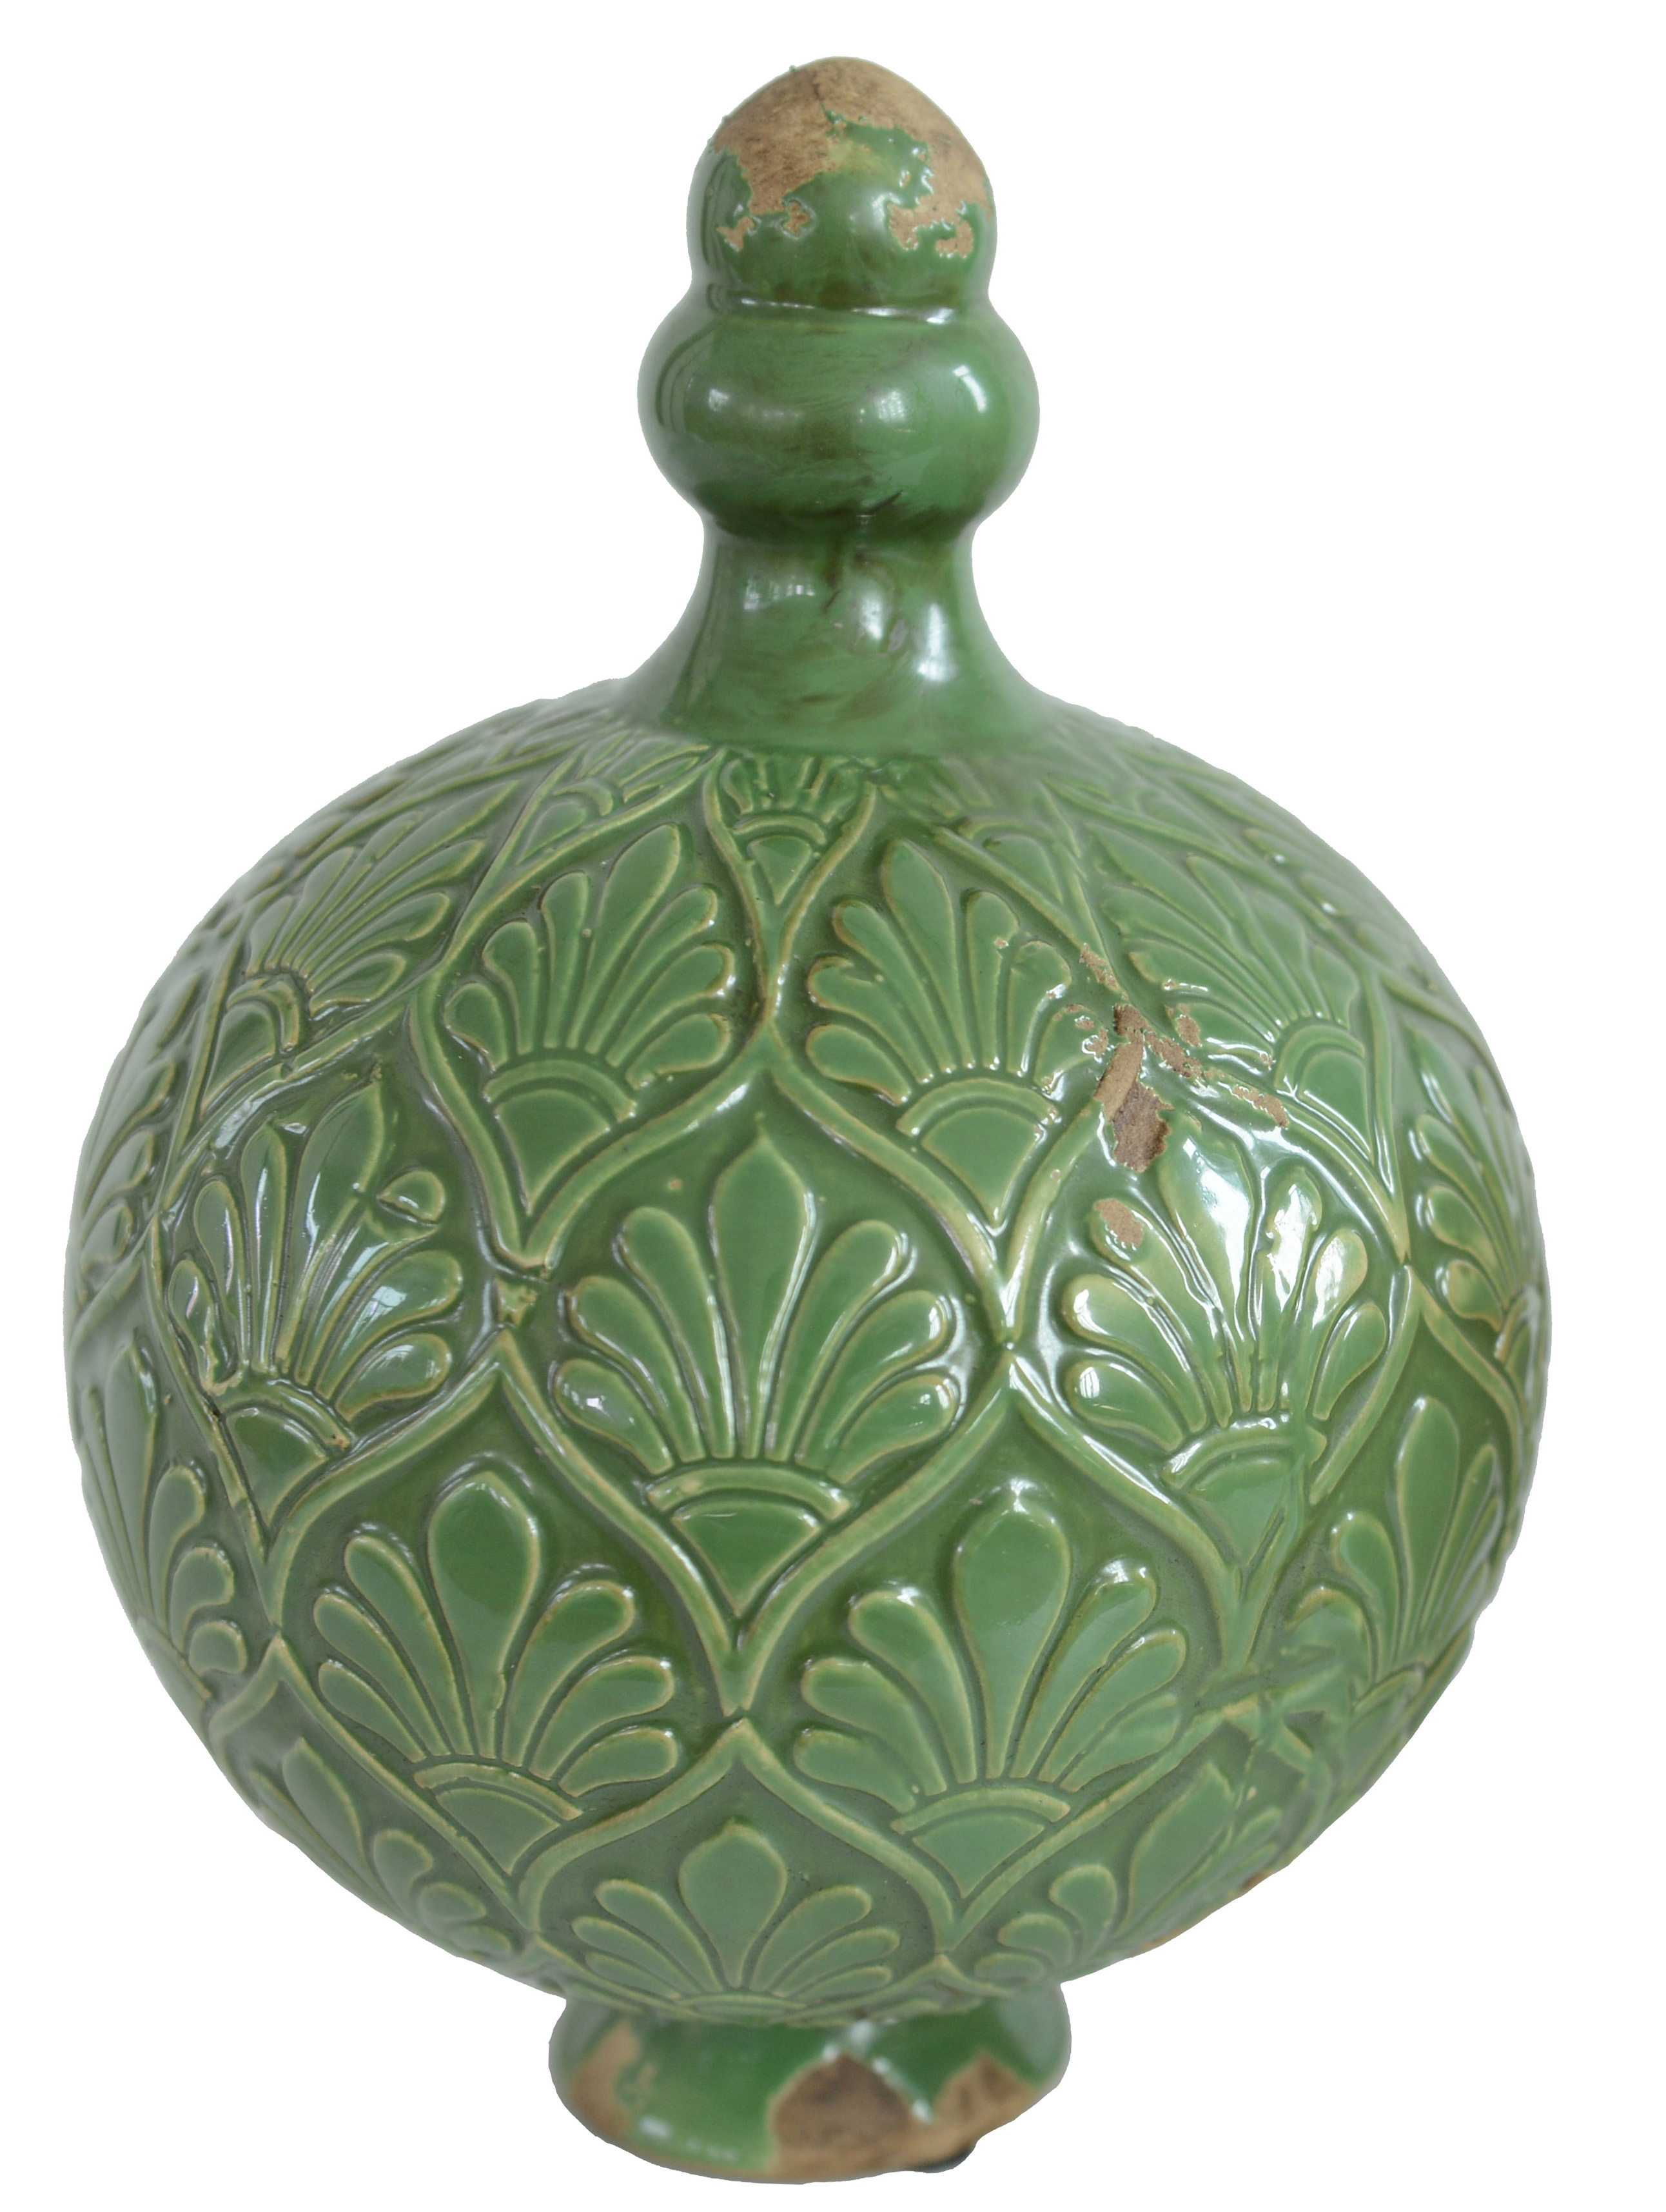 Záhradná dekorácia, keramická guľa s jemným ornamentom, zelená 17cn